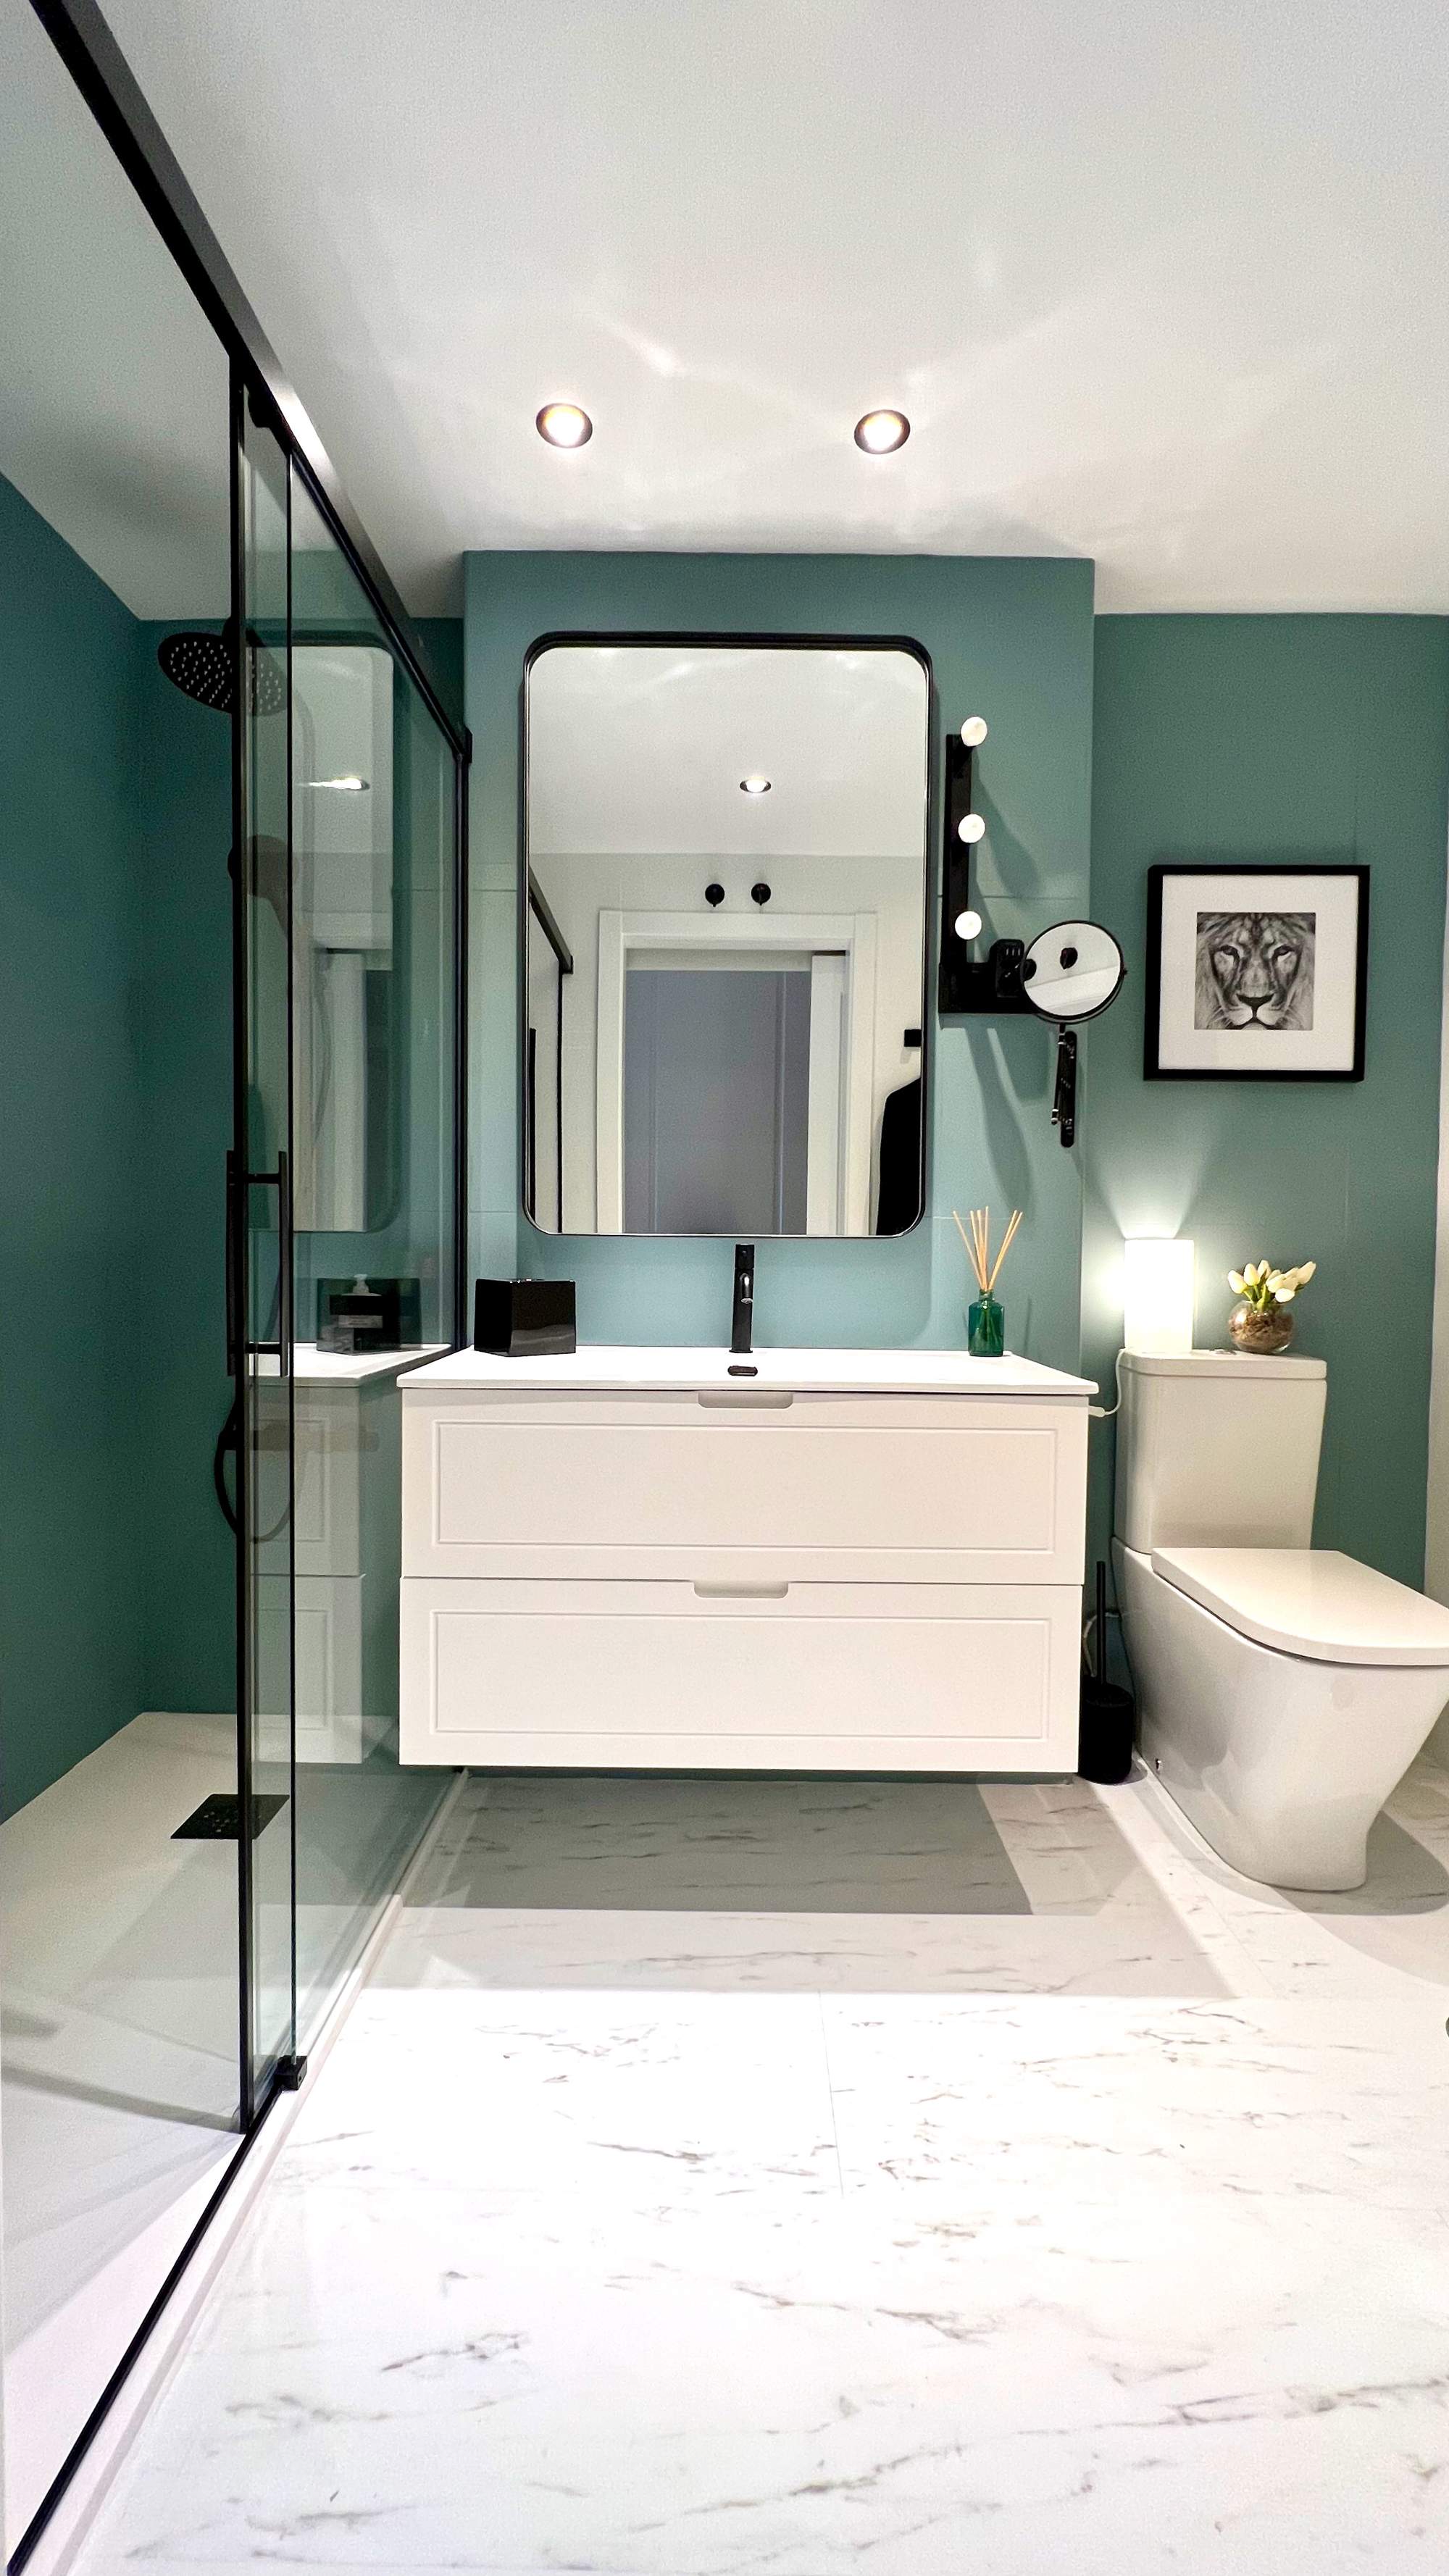 Baño con pared pintada en verde, mueble bajolavabo lacado en blanco y ducha con mampara. Pavimento, de suelo vinílico que imita el mármol.